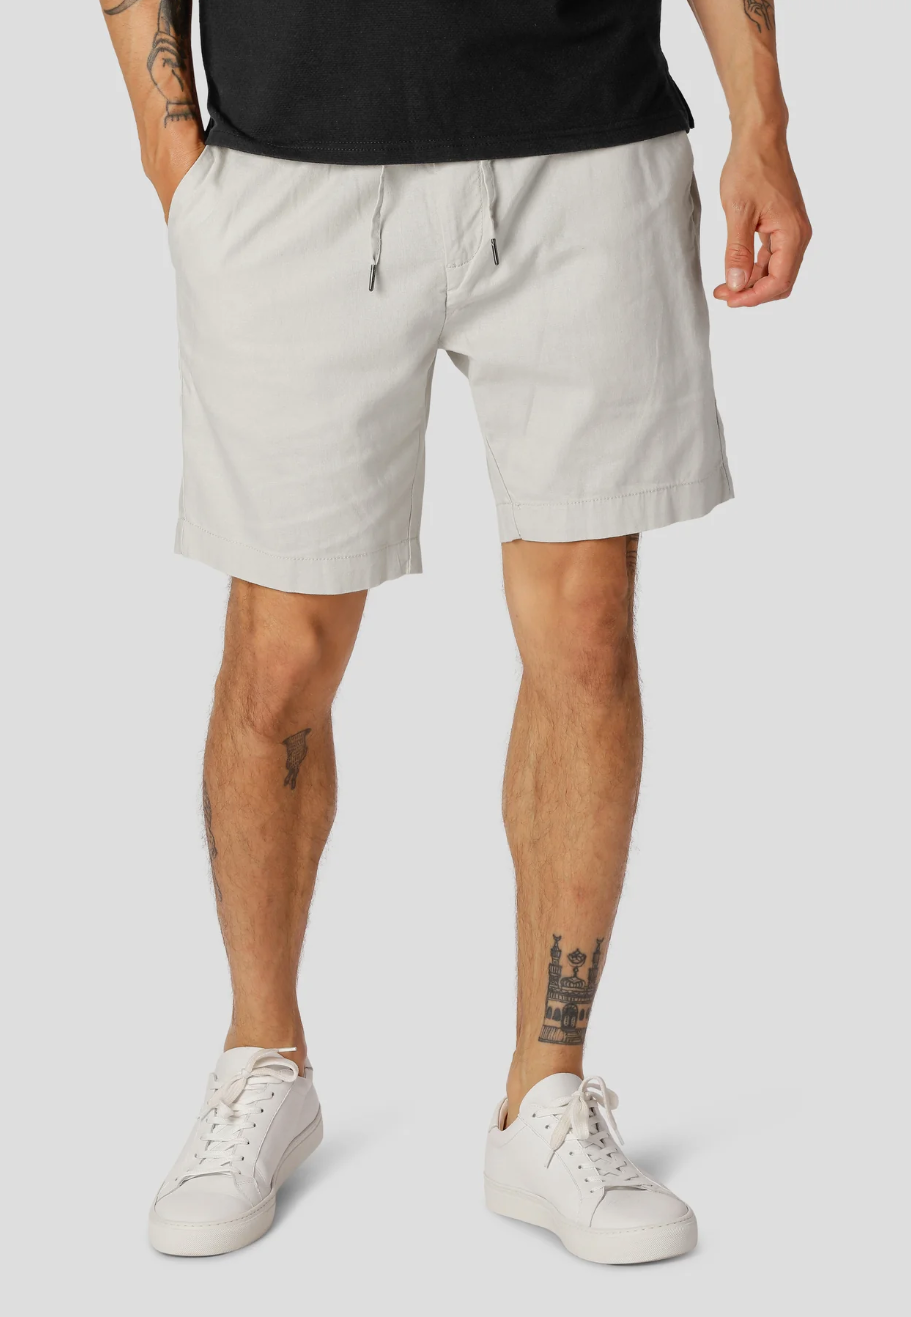 Barcelona Cotton/Linen Shorts White